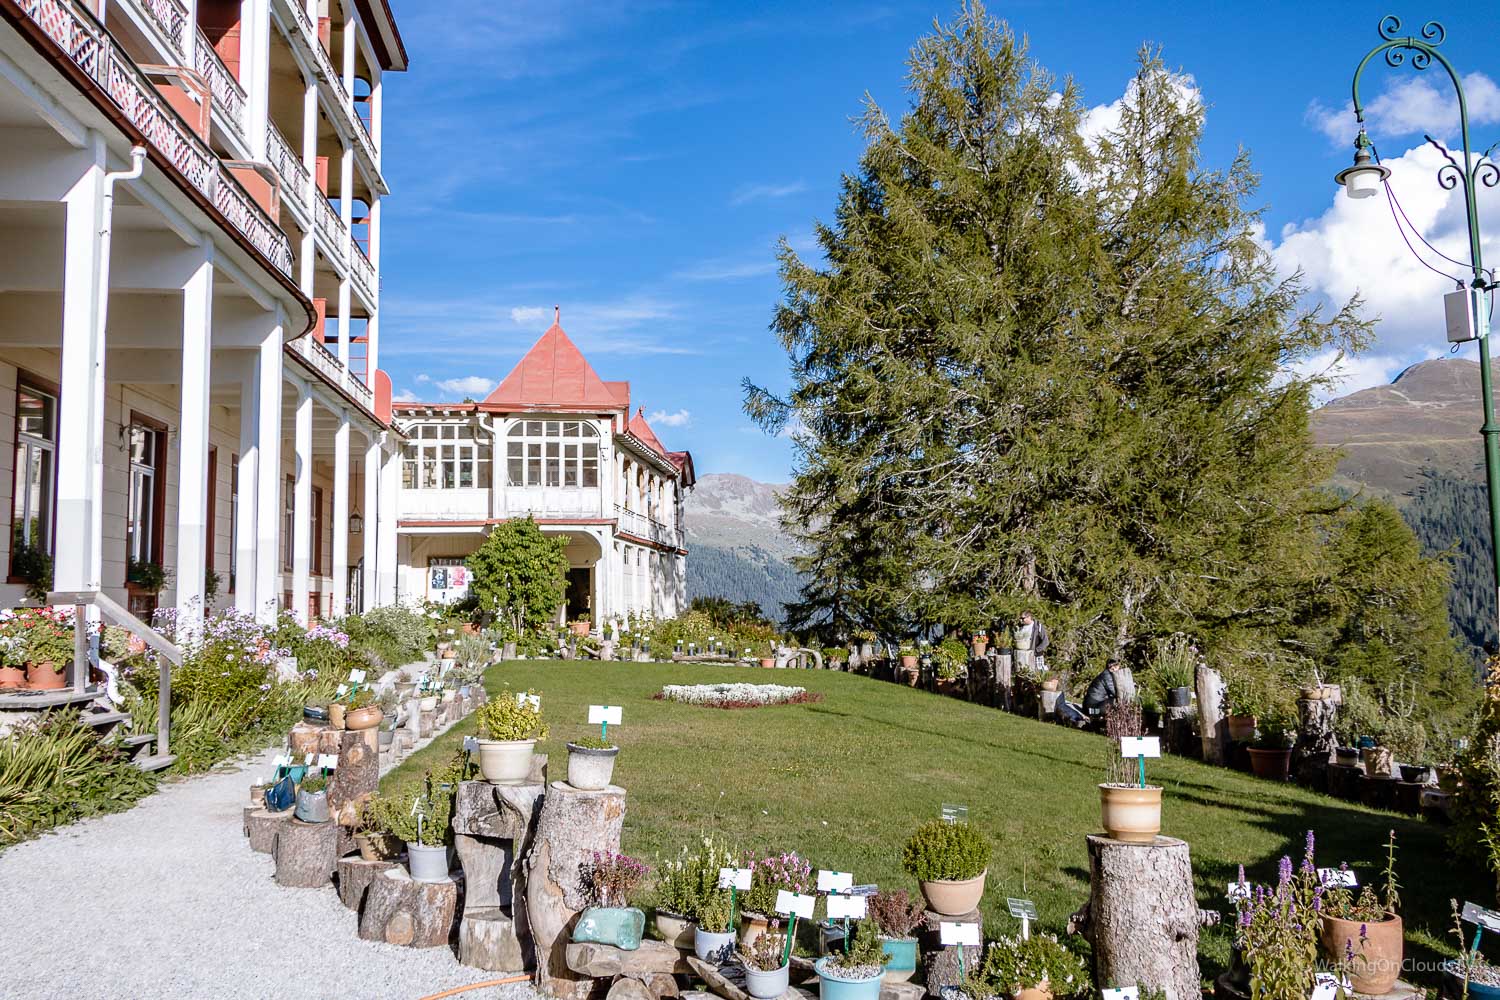 Davos - Schweiz, Tipps für einen erholsamen Urlaub. Wandern auf den Wegen von Thomas Mann und Ernst Ludwig Kirchner - Sehenswürdigkeiten - Schatzalp - Reiseblog